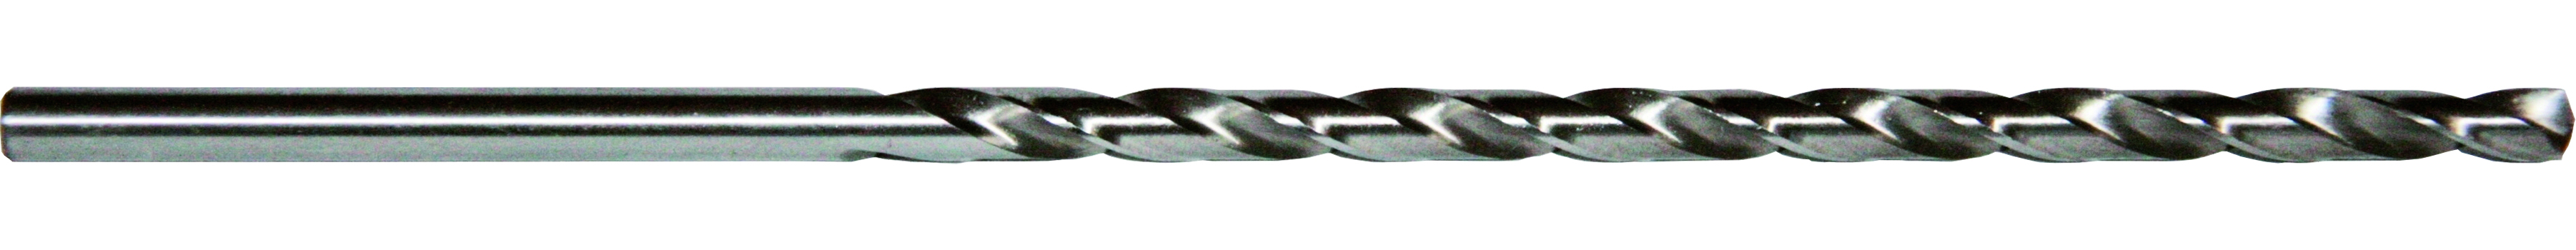 Spiralbohrer Metallbohrer extra lang DIN 1869 HSS-G Ø 5,0 Gesamtlänge 195 mm